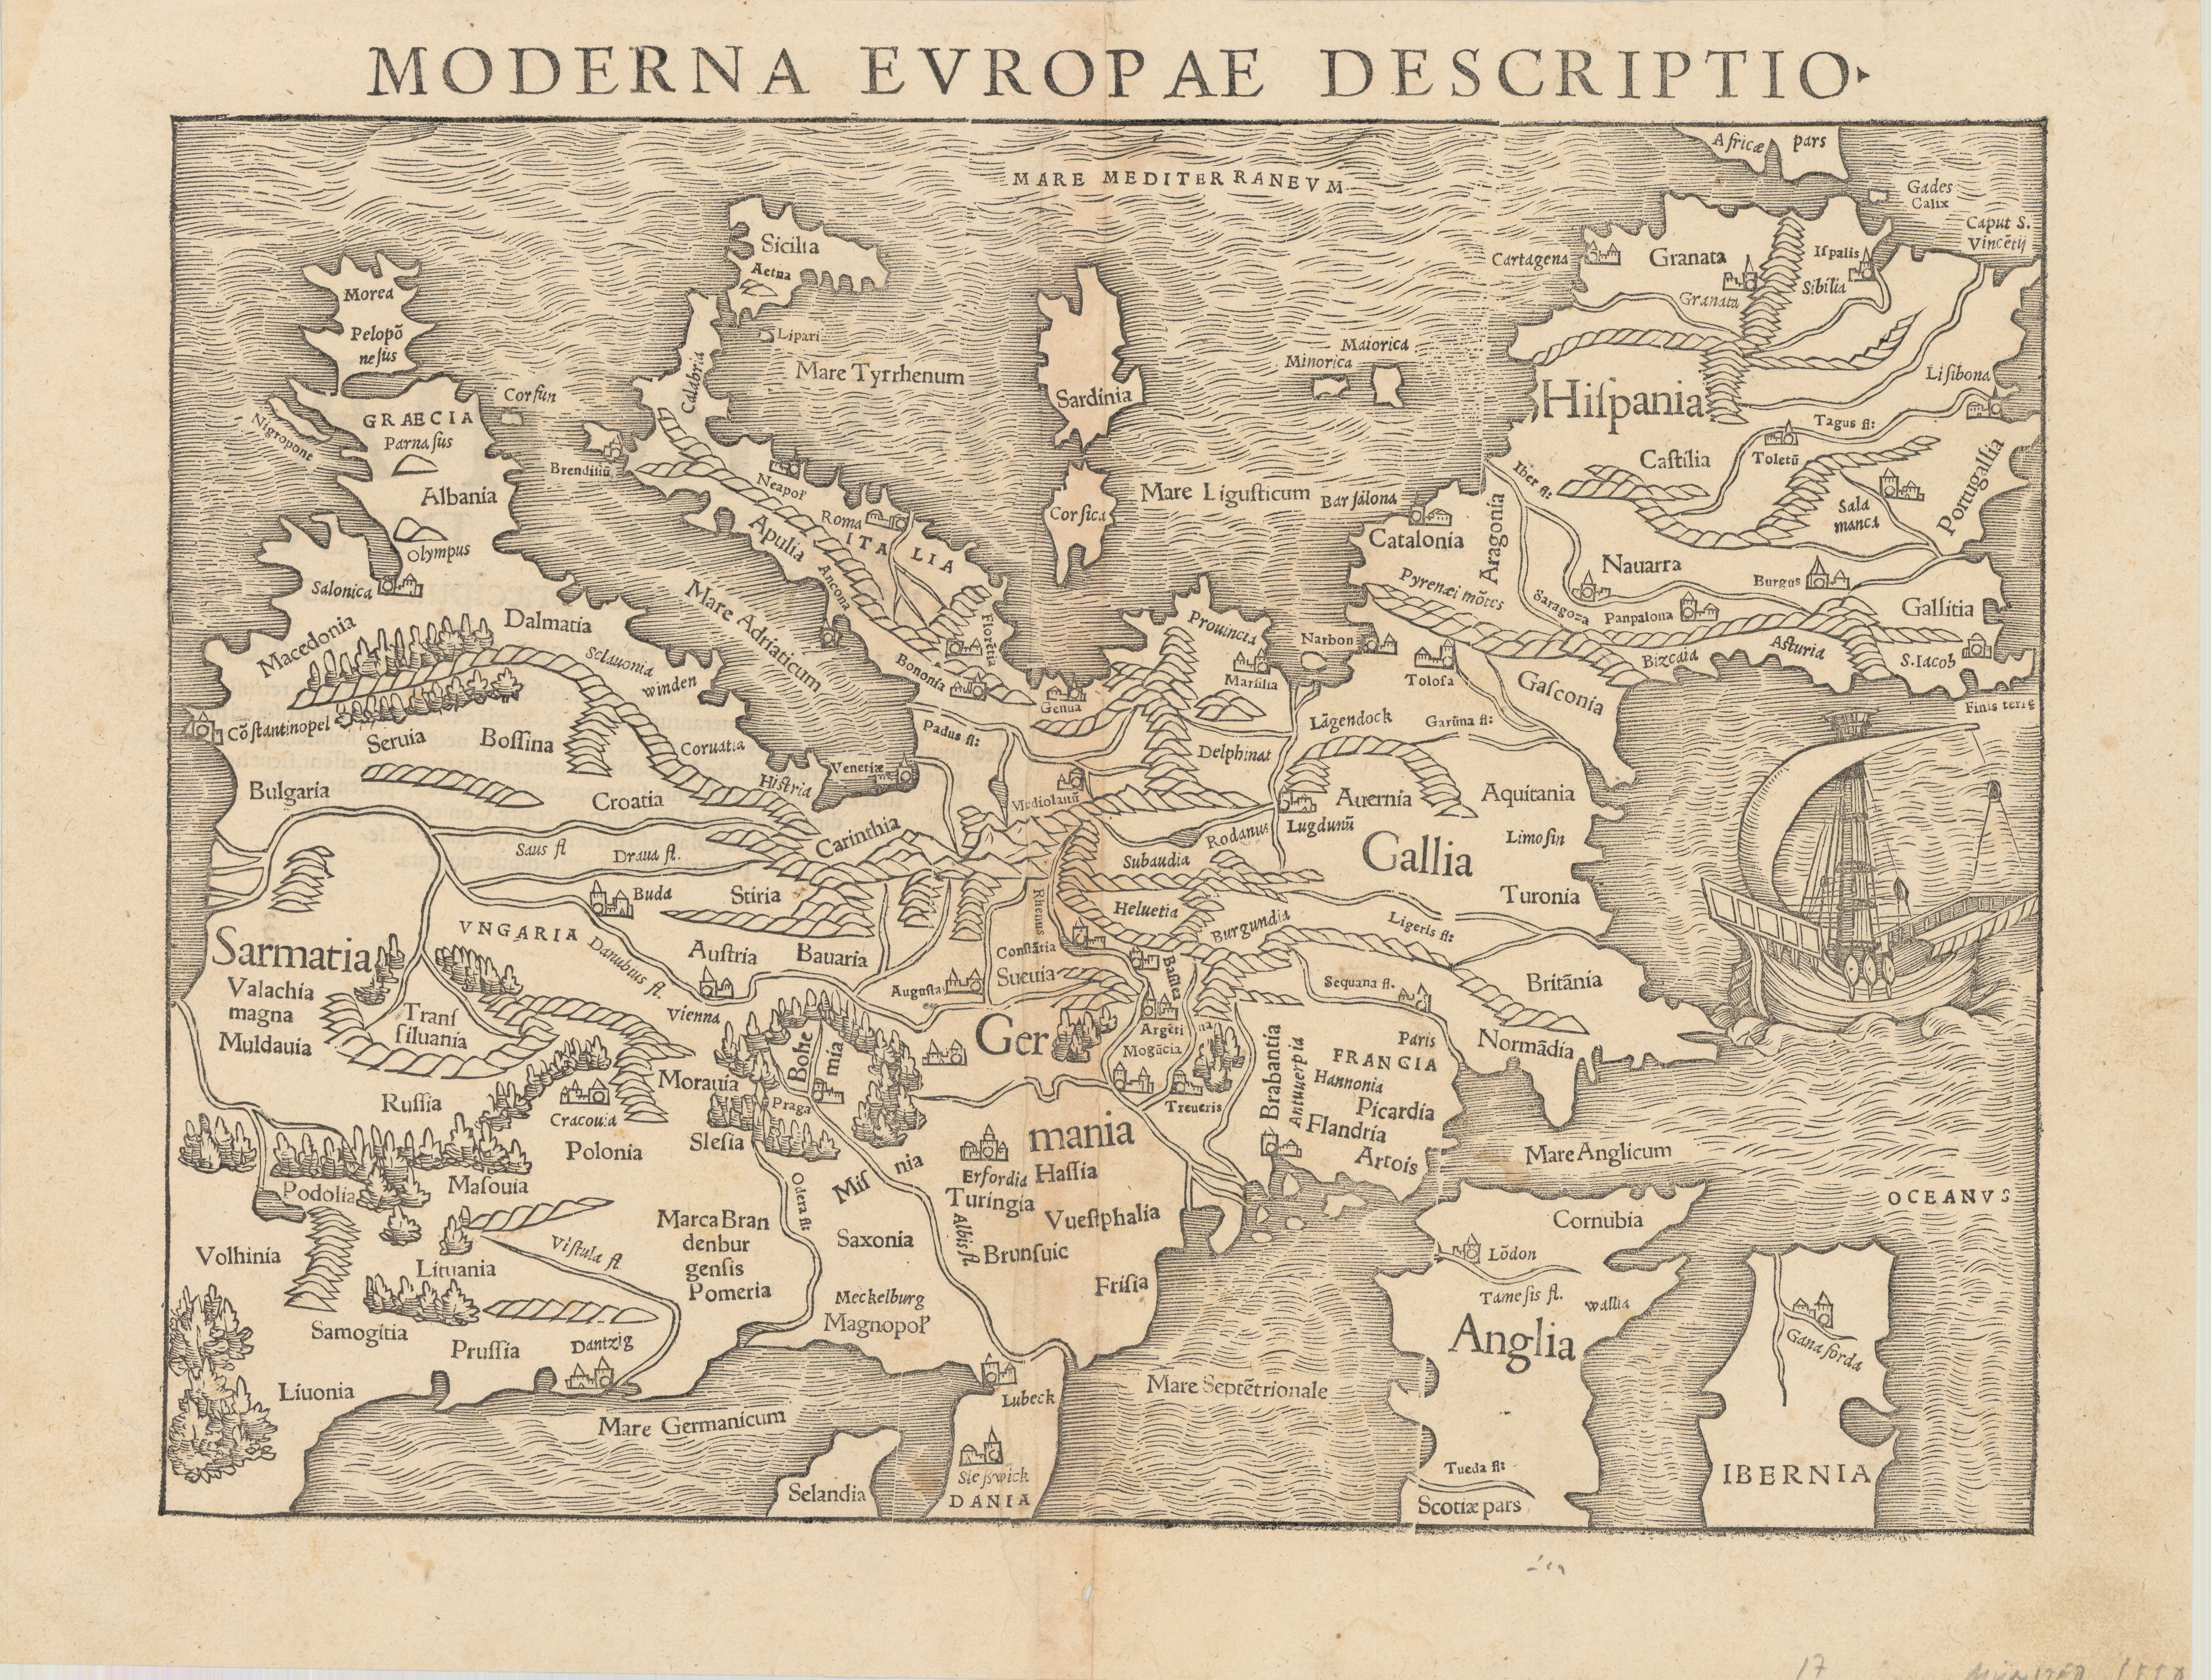 Mapa de Europa por Sebastian Münster y publicado en su obra "Geographia", en Basilea en 1550